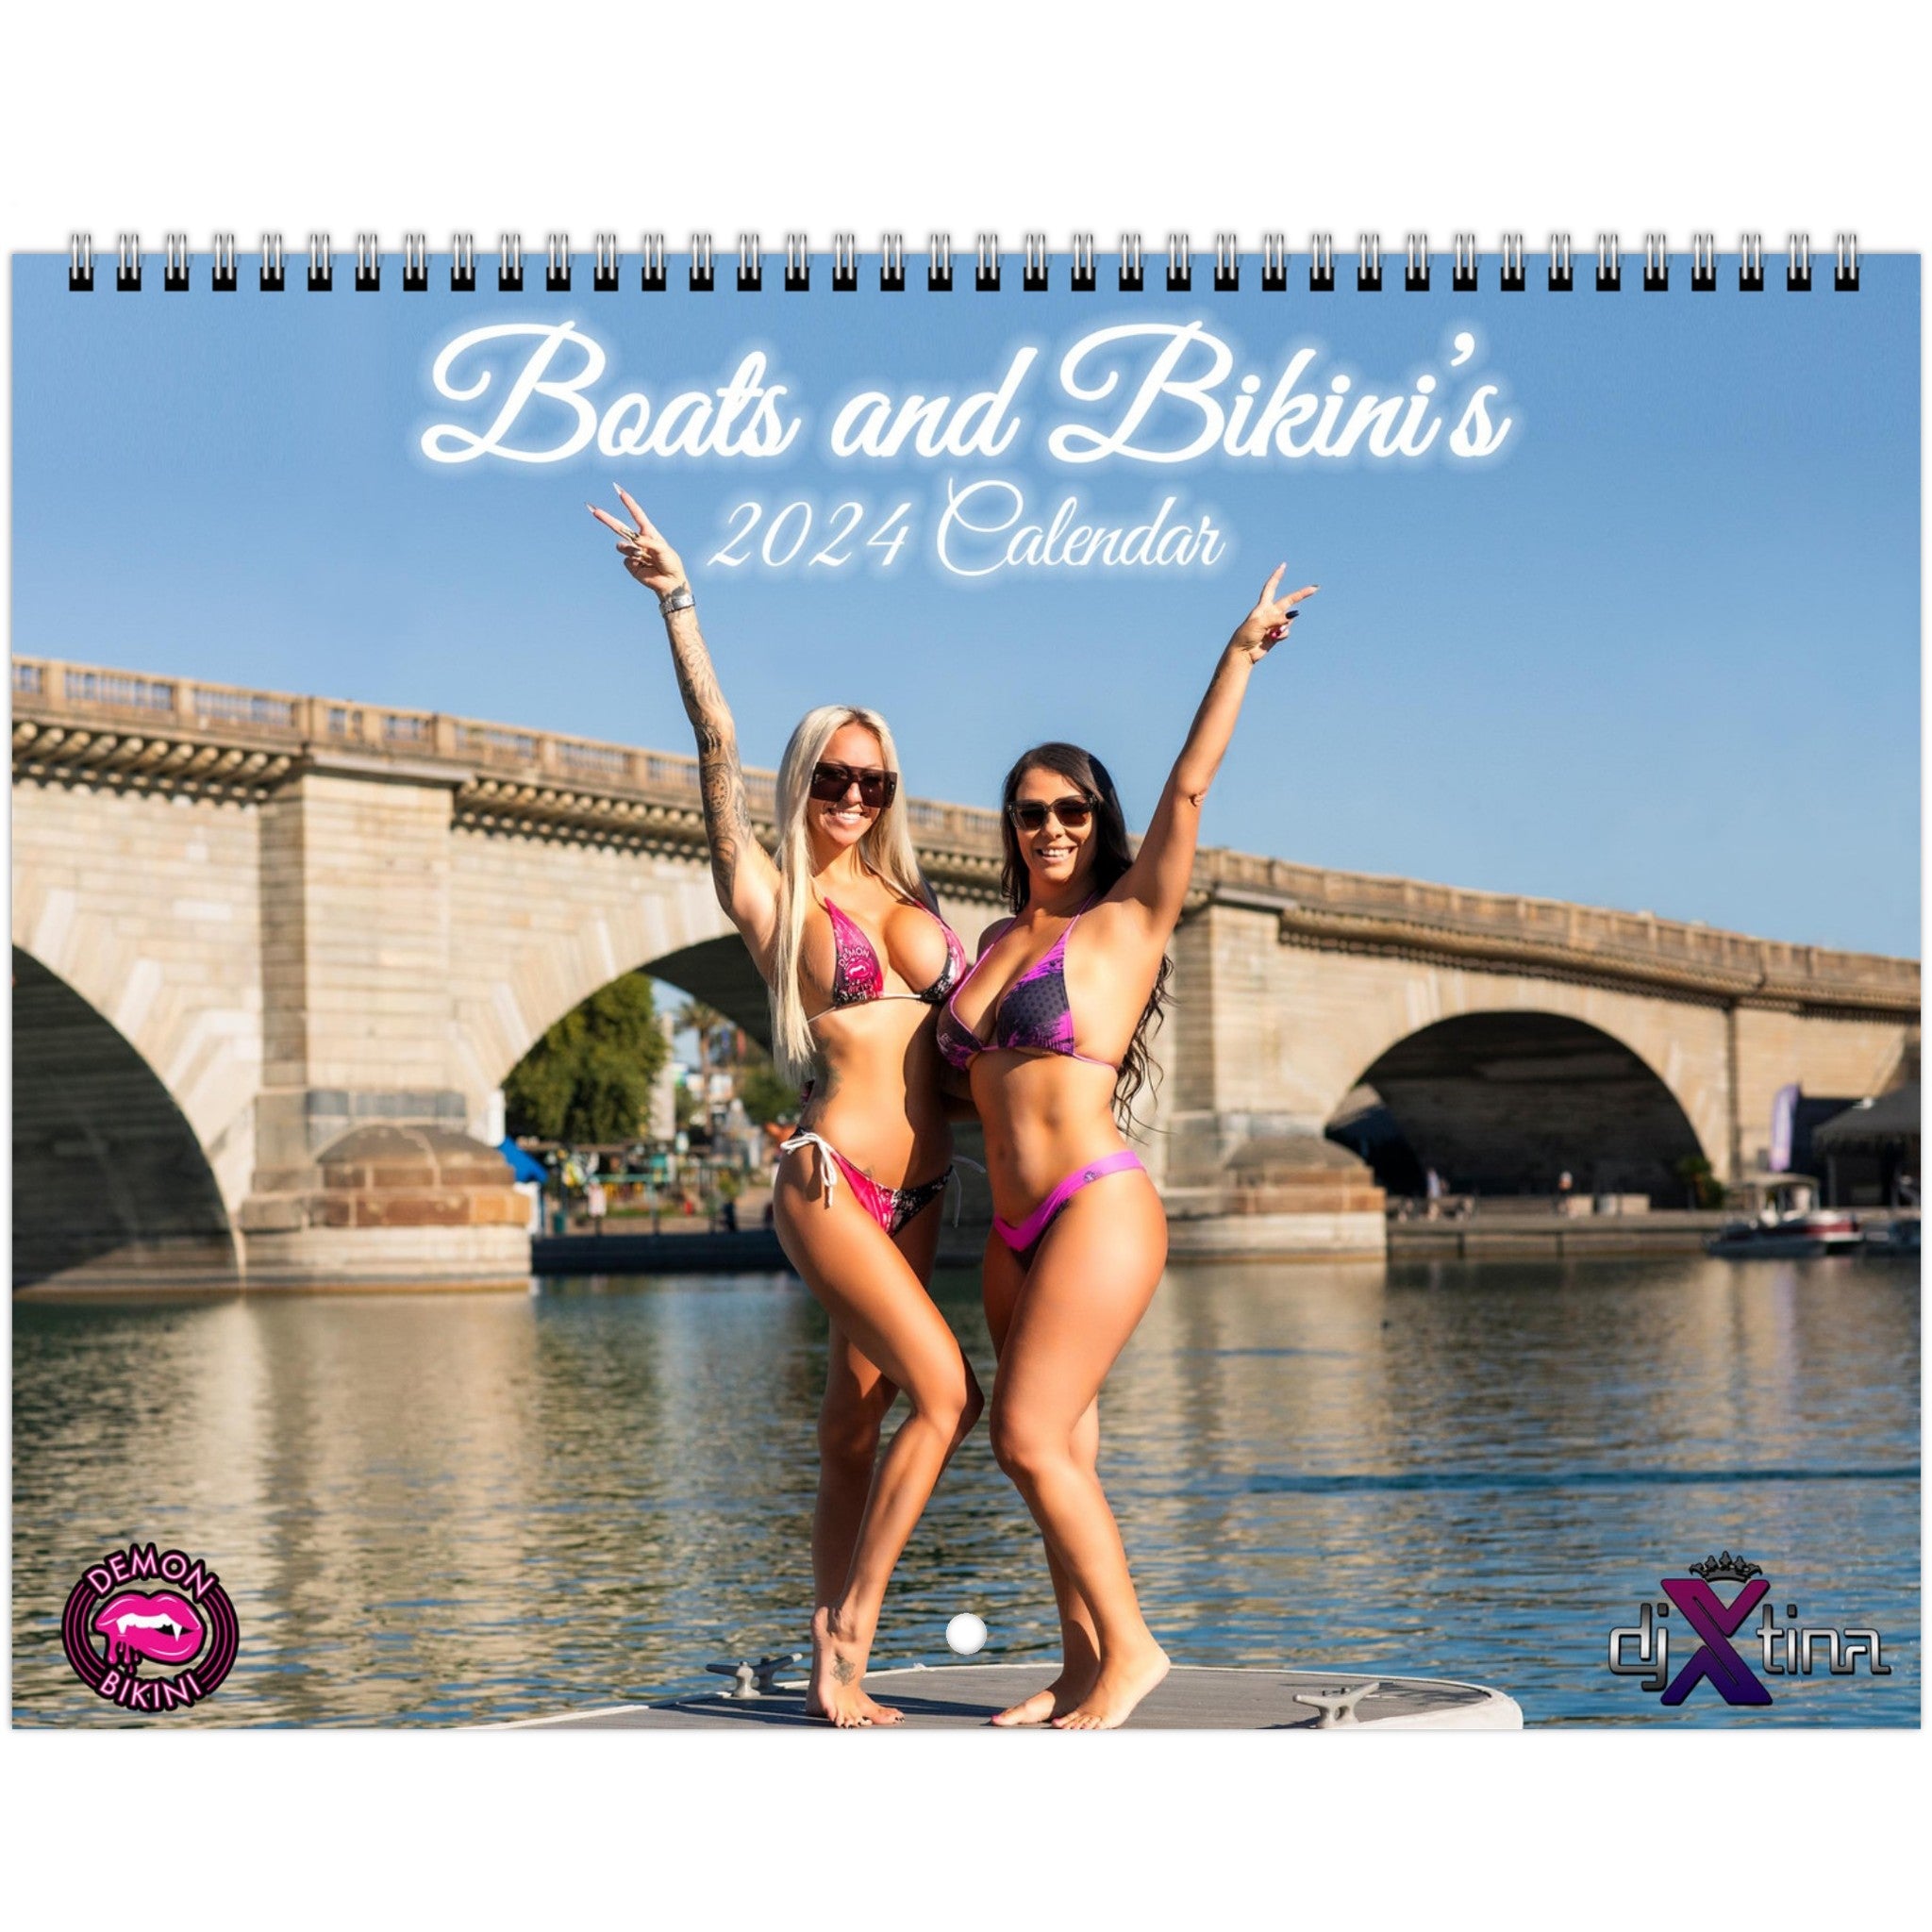 Boats and Bikini's 2024 Calendar